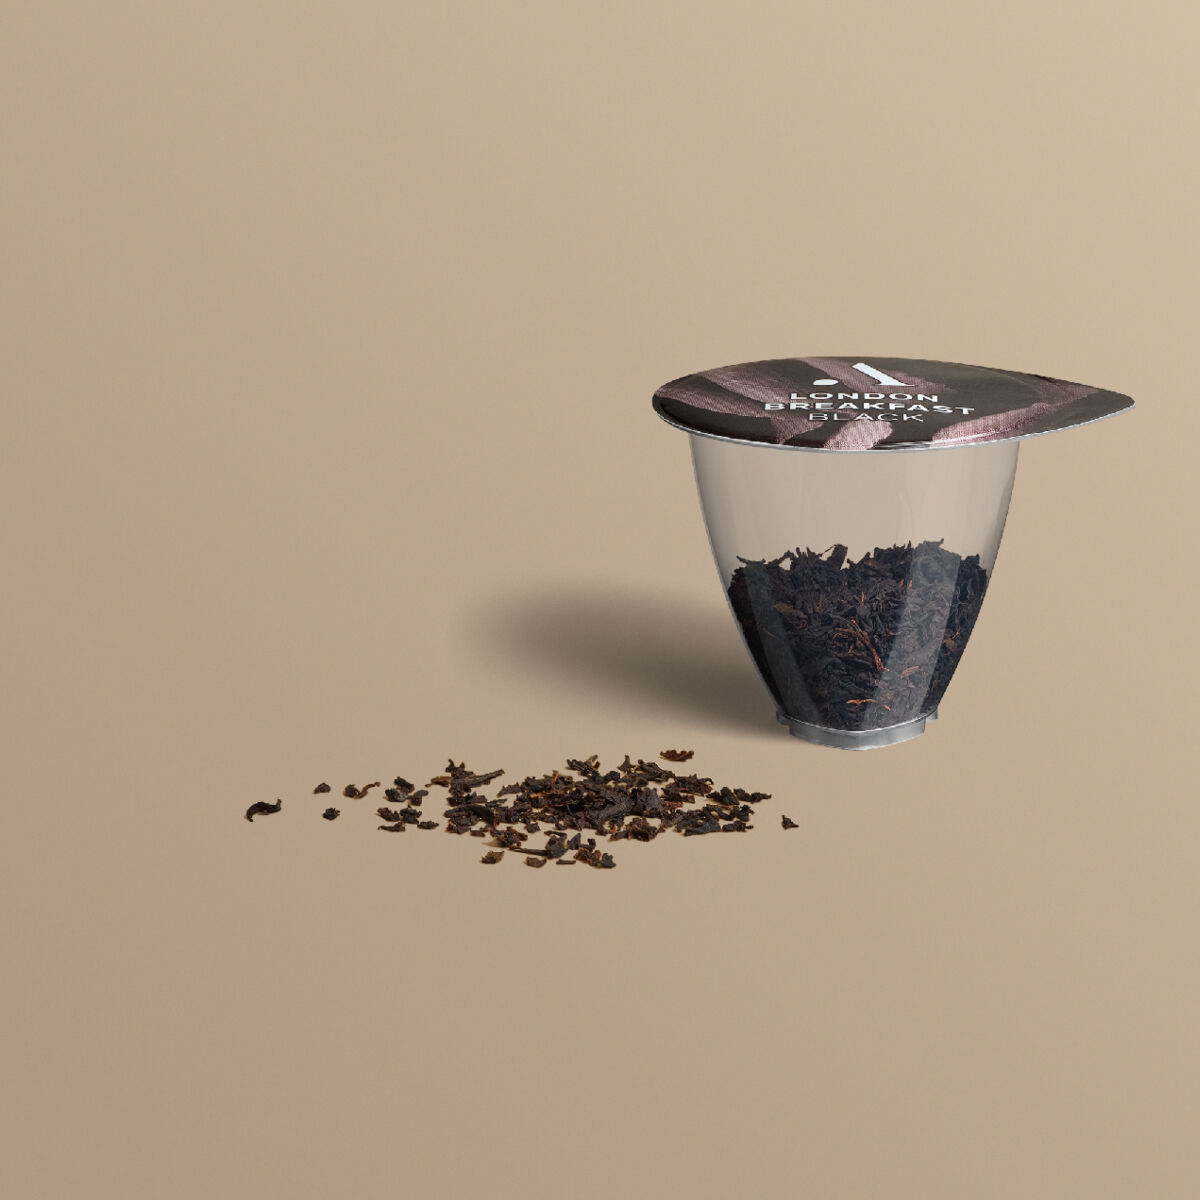 avoury tea capsule with loose black tea leaves